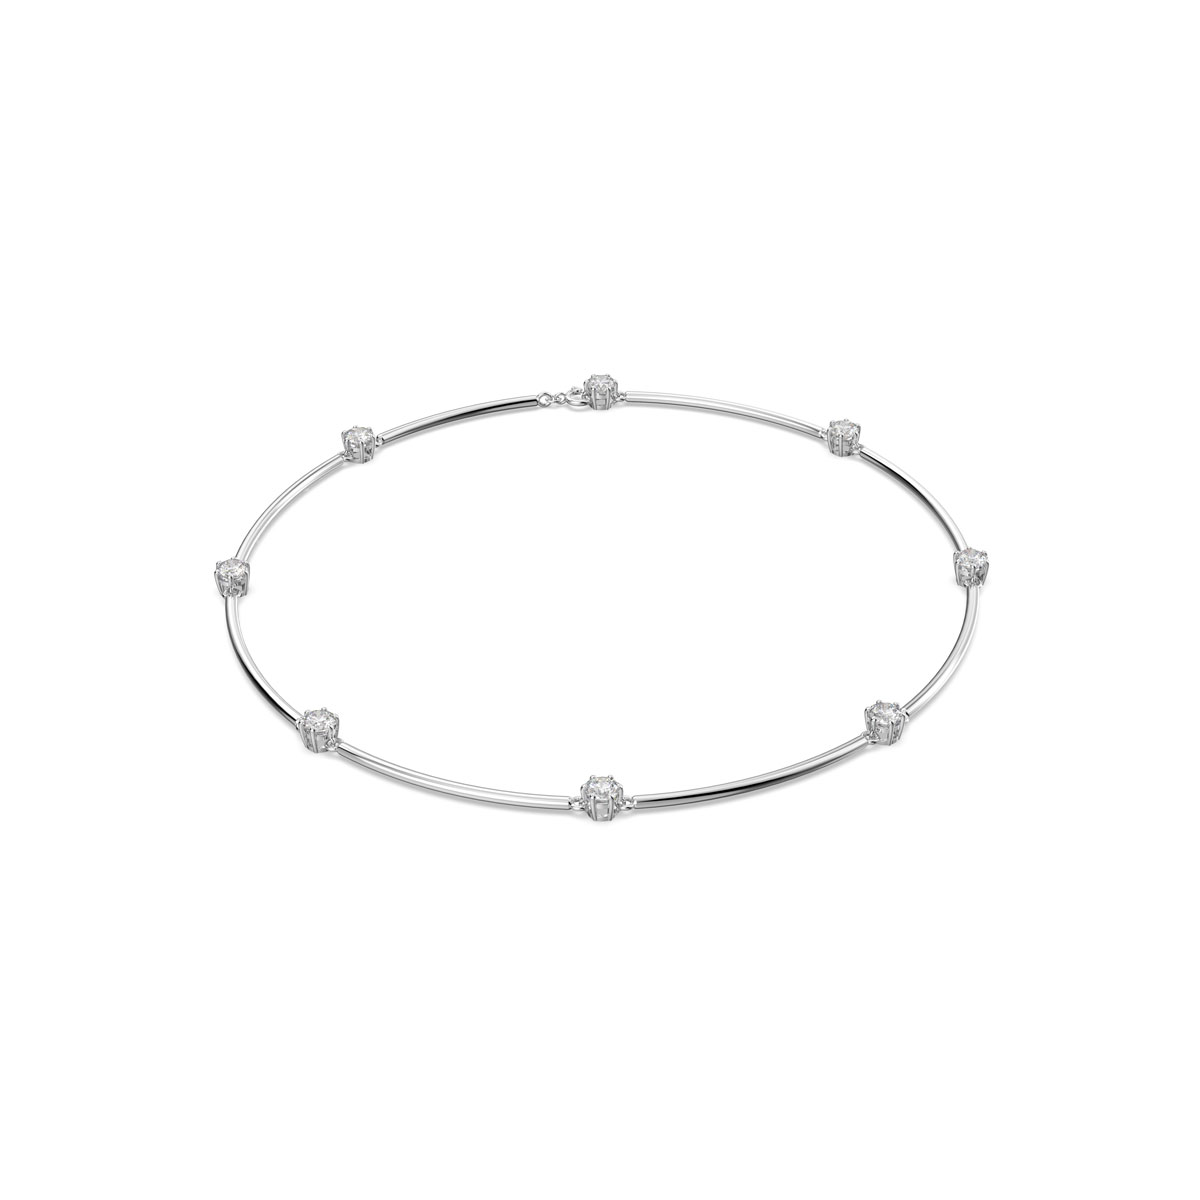 Swarovski Constella Necklace, Round Cut, White, Rhodium Plated